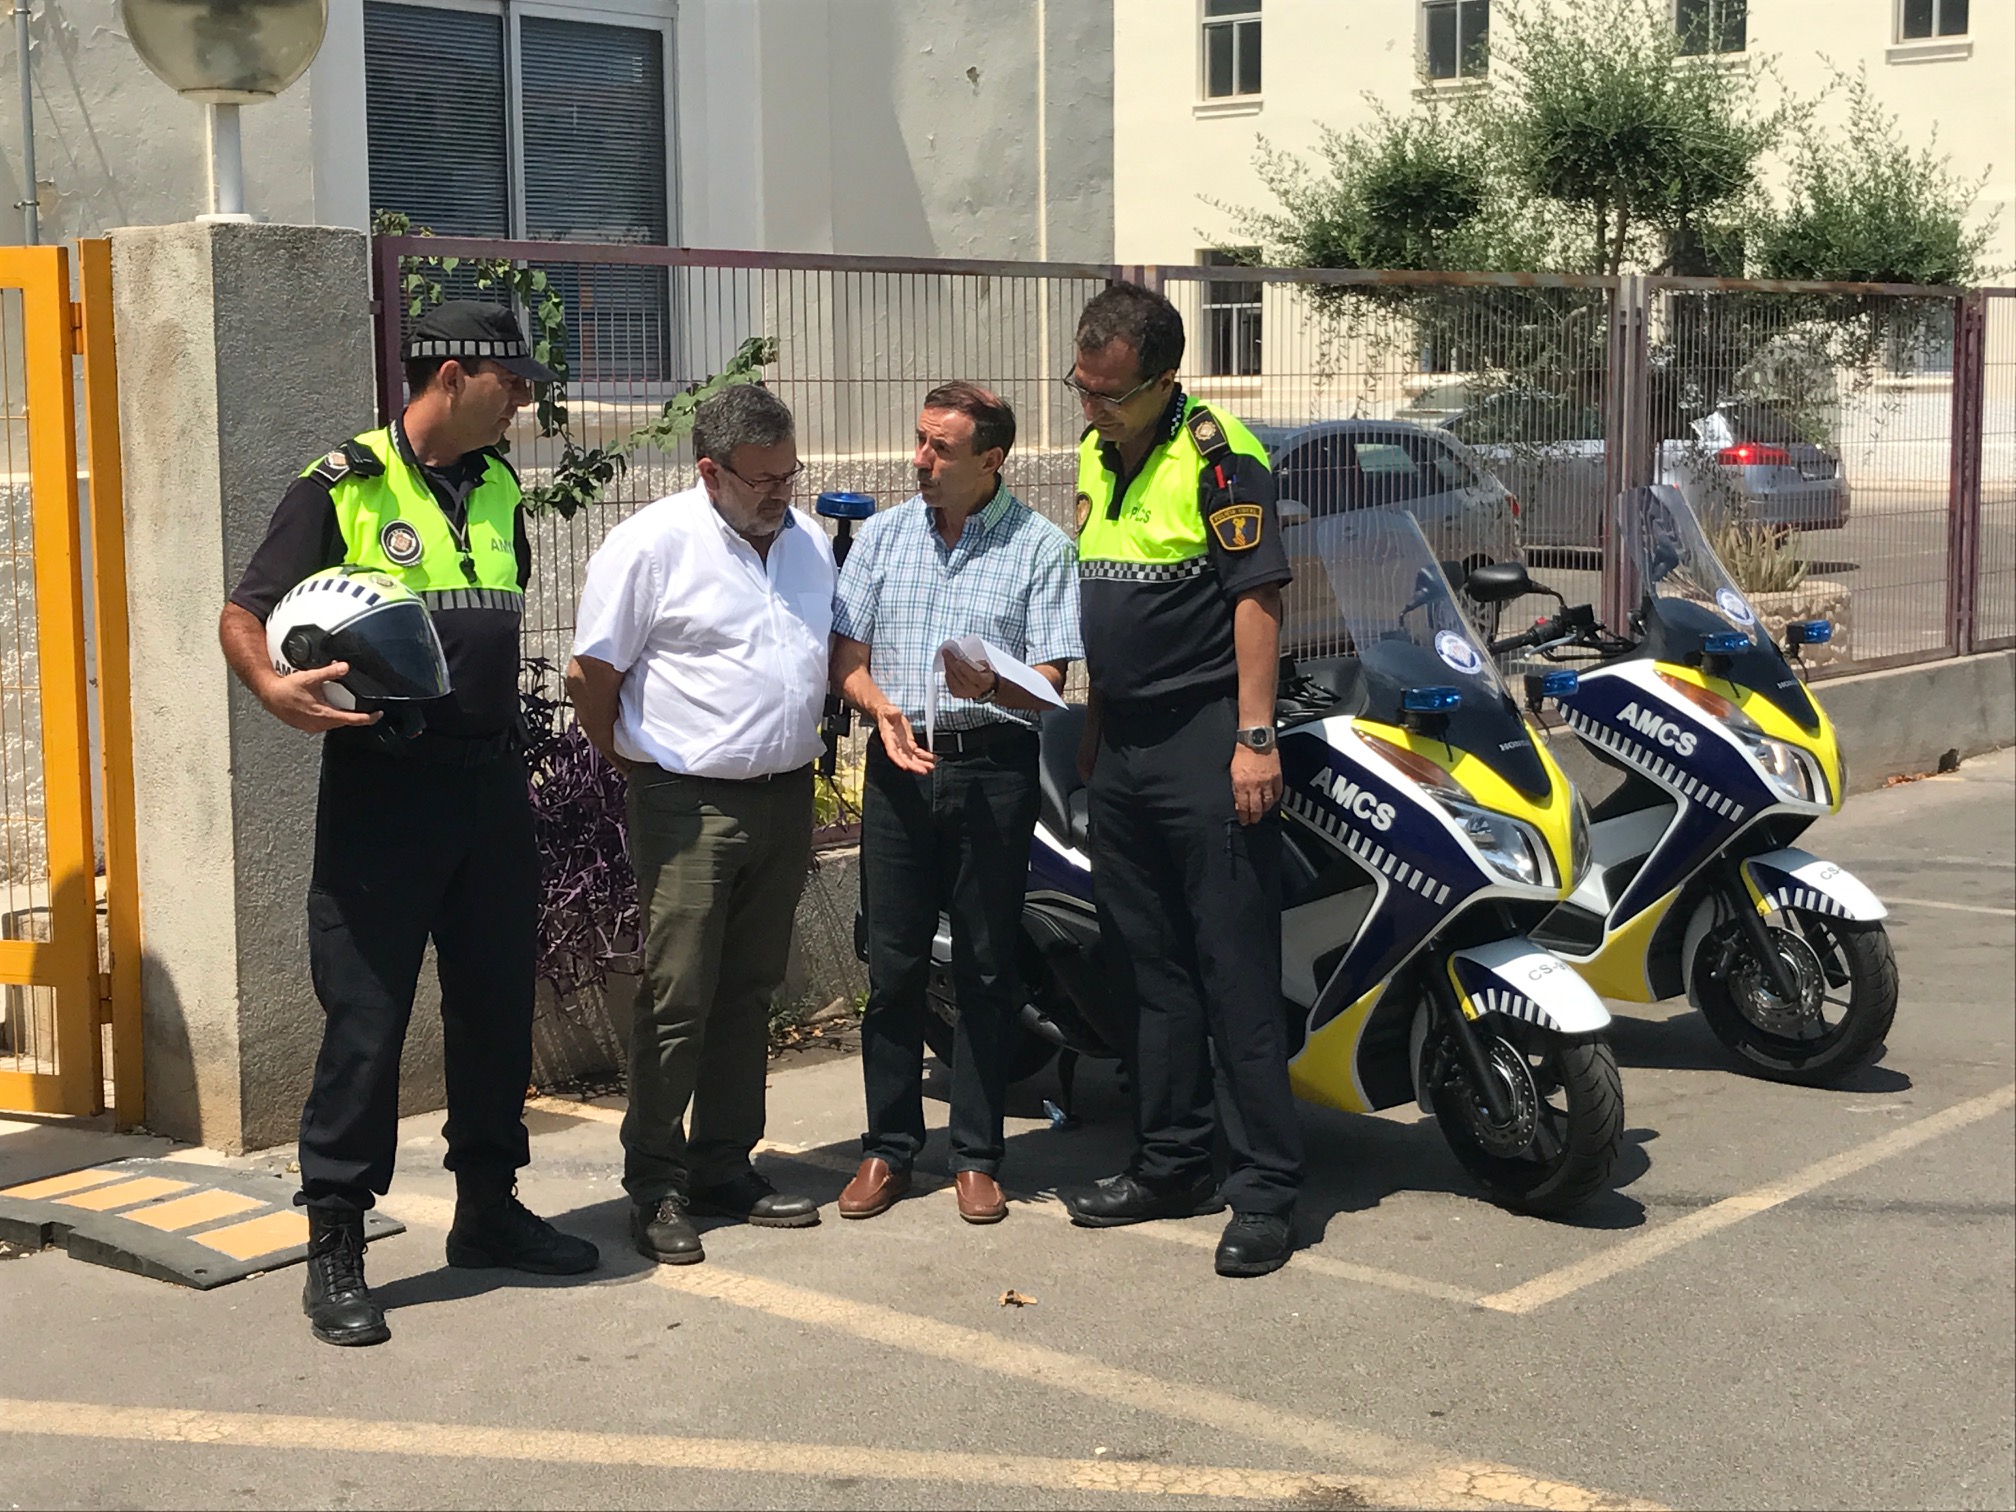 30-07-2017 FN noves motos per a agents mobilitat.JPG